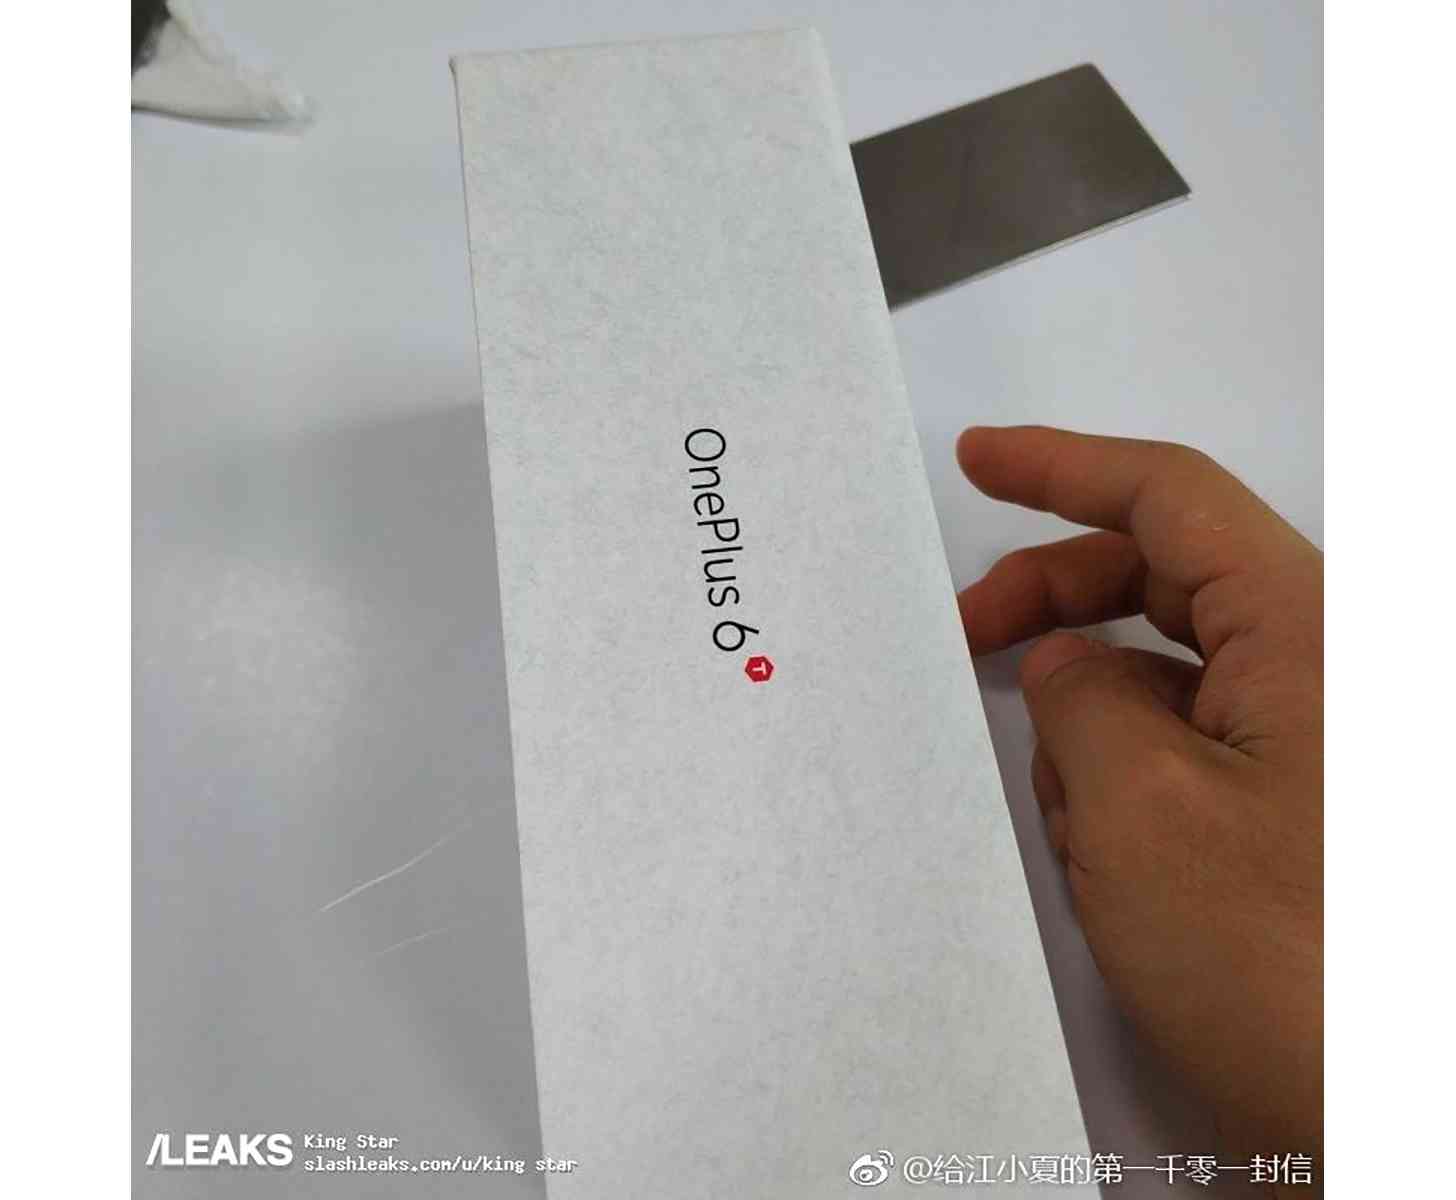 OnePlus 6T packaging leak 3